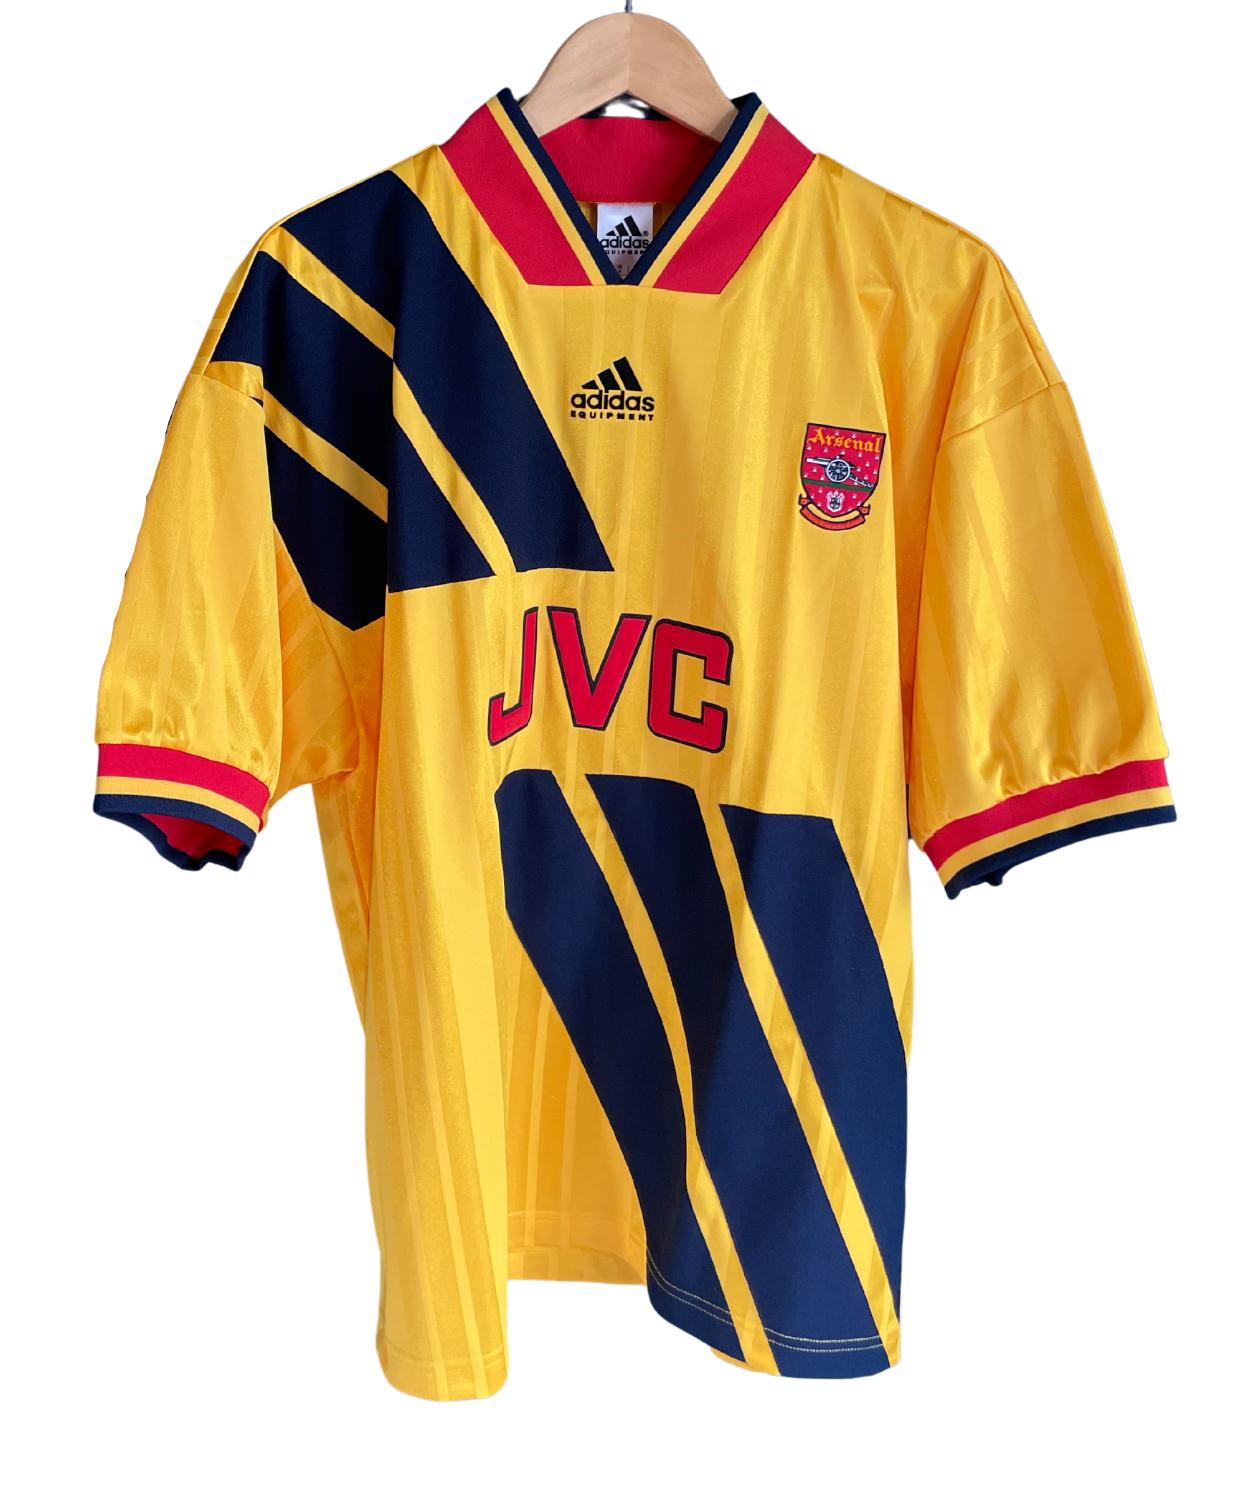 Arsenal FC 1993/94 Wright Away Kit Remake (M)